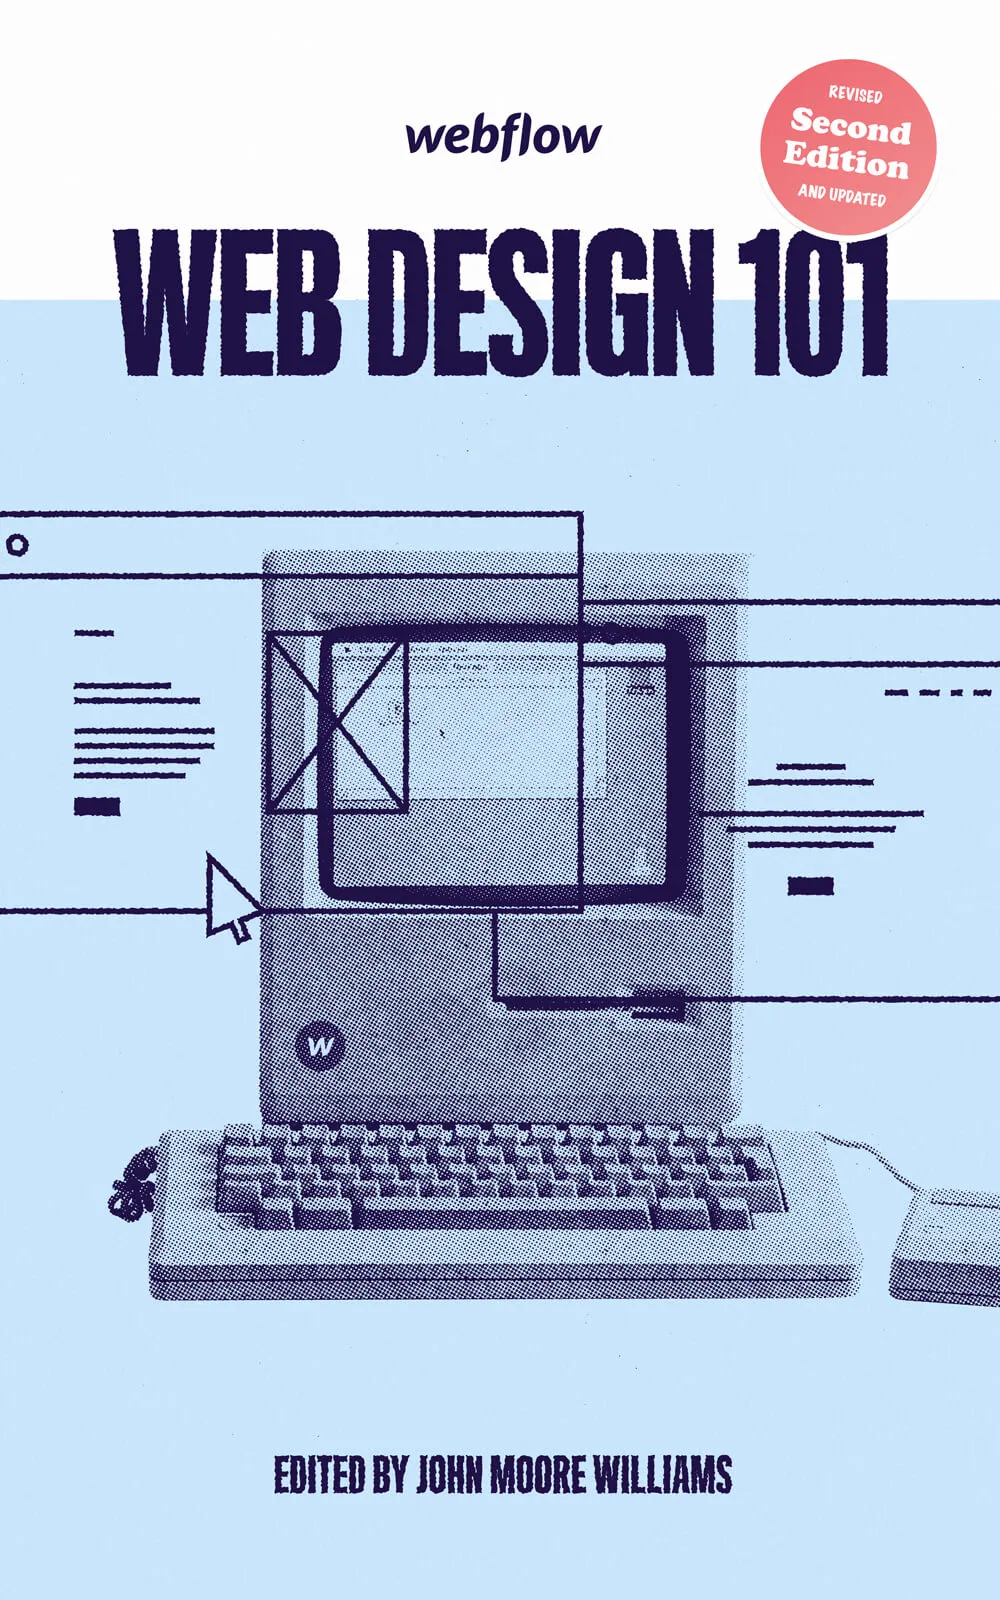 Webflow - livre fondamentaux design web deuxième édition